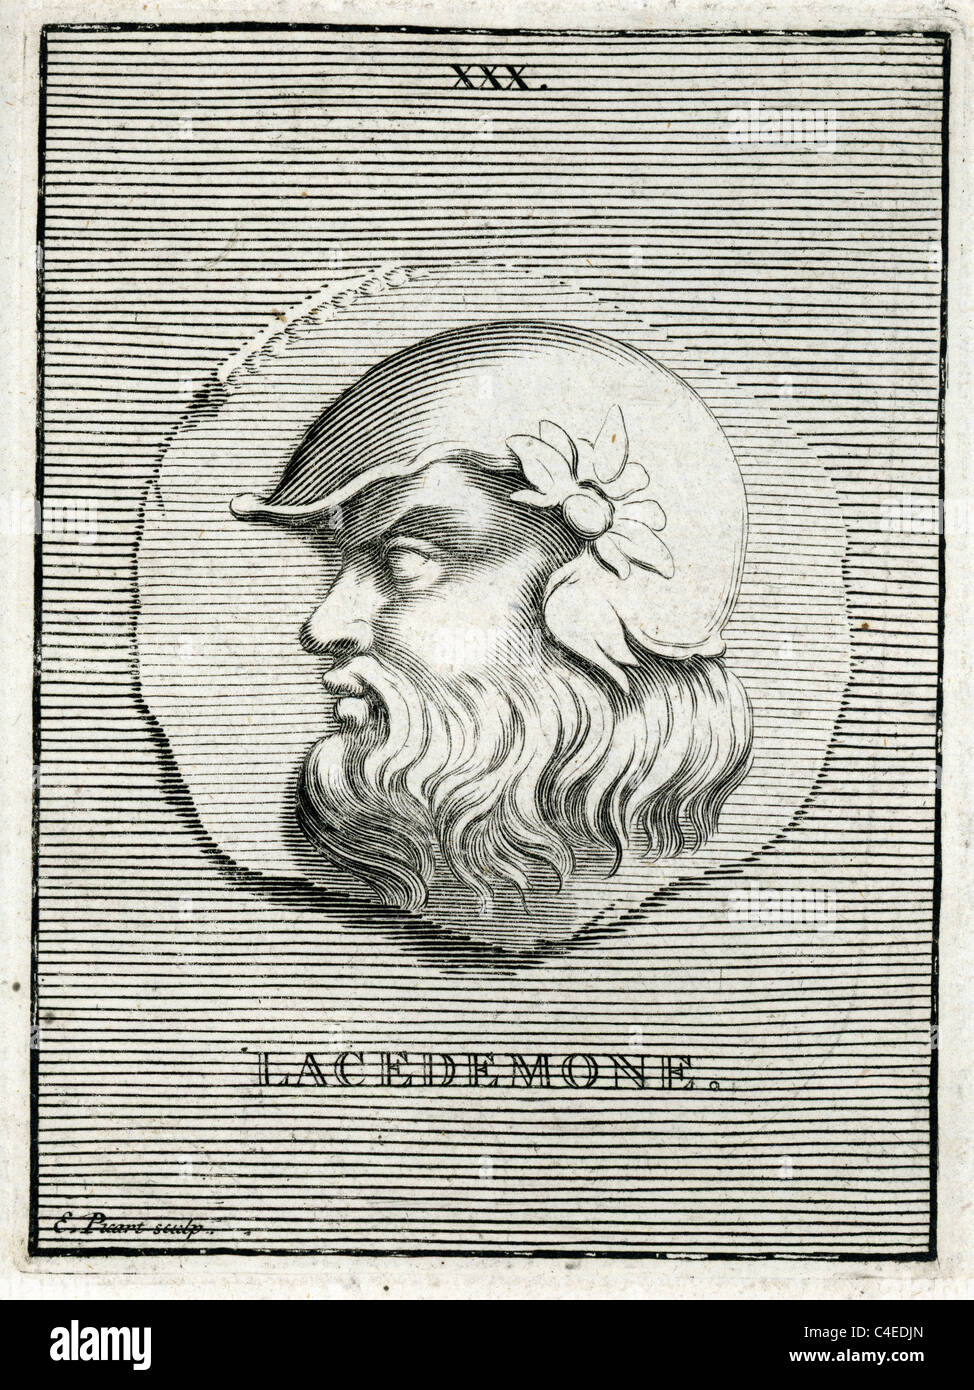 Klassische Portrait des Lacedemone in der griechischen Mythologie Sohn des Zeus und der Pleaid Taygete und einem mythischen König von Sparta. Stockfoto